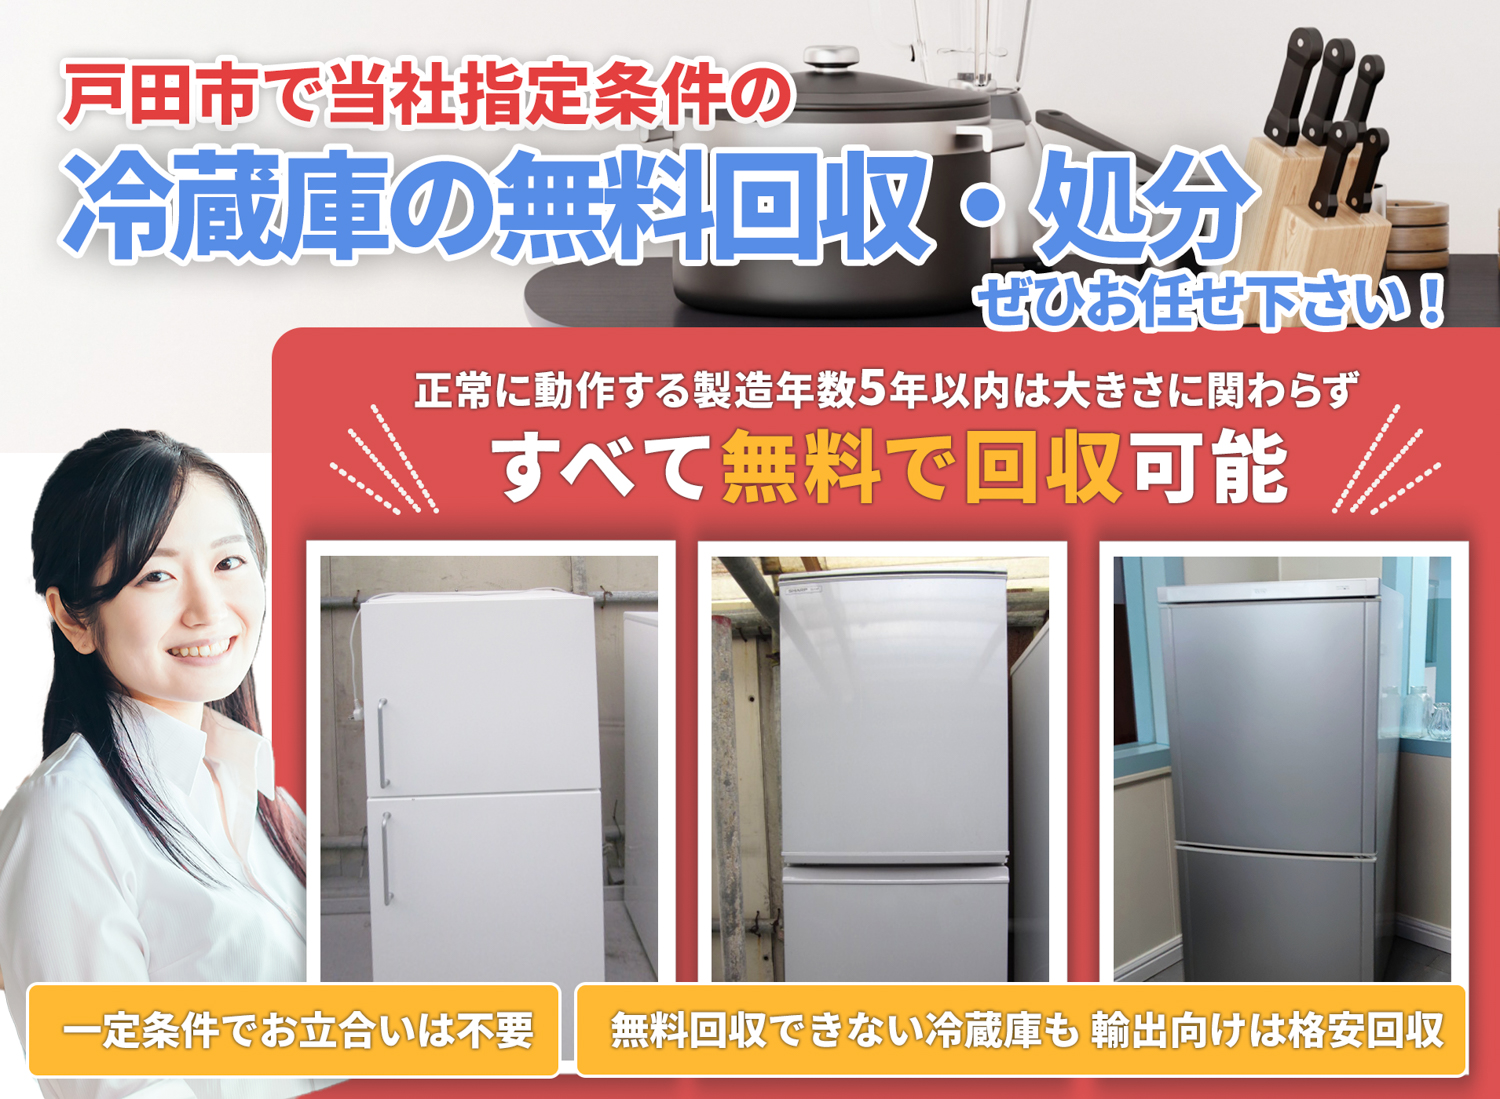 戸田市でお客様が絶対に満足する冷蔵庫無料回収処分隊の冷蔵庫無料回収サービス